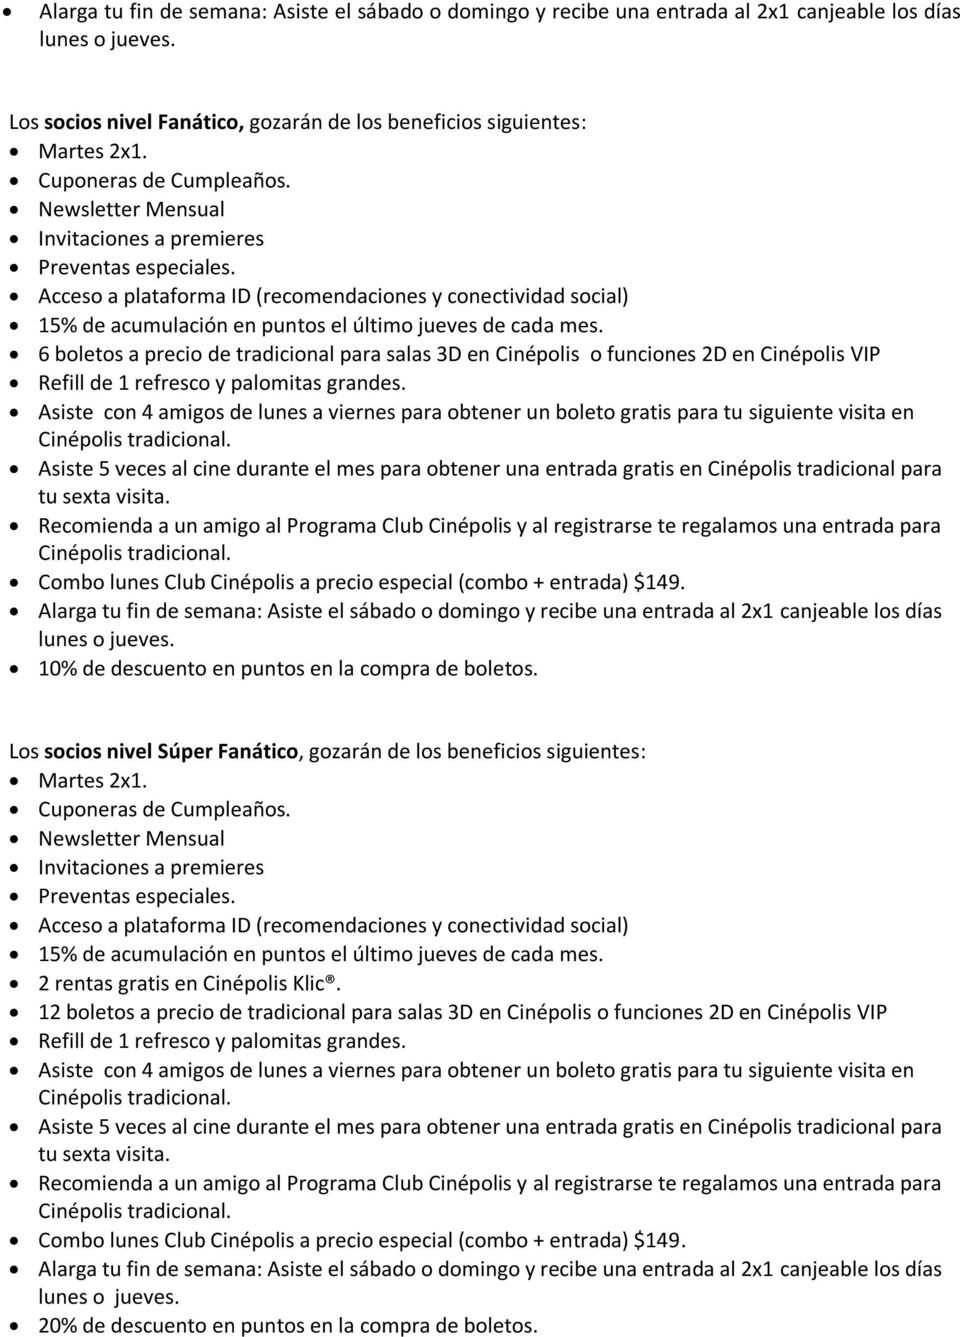 TÉRMINOS Y CONDICIONES DE CLUB CINÉPOLIS - PDF Free Download